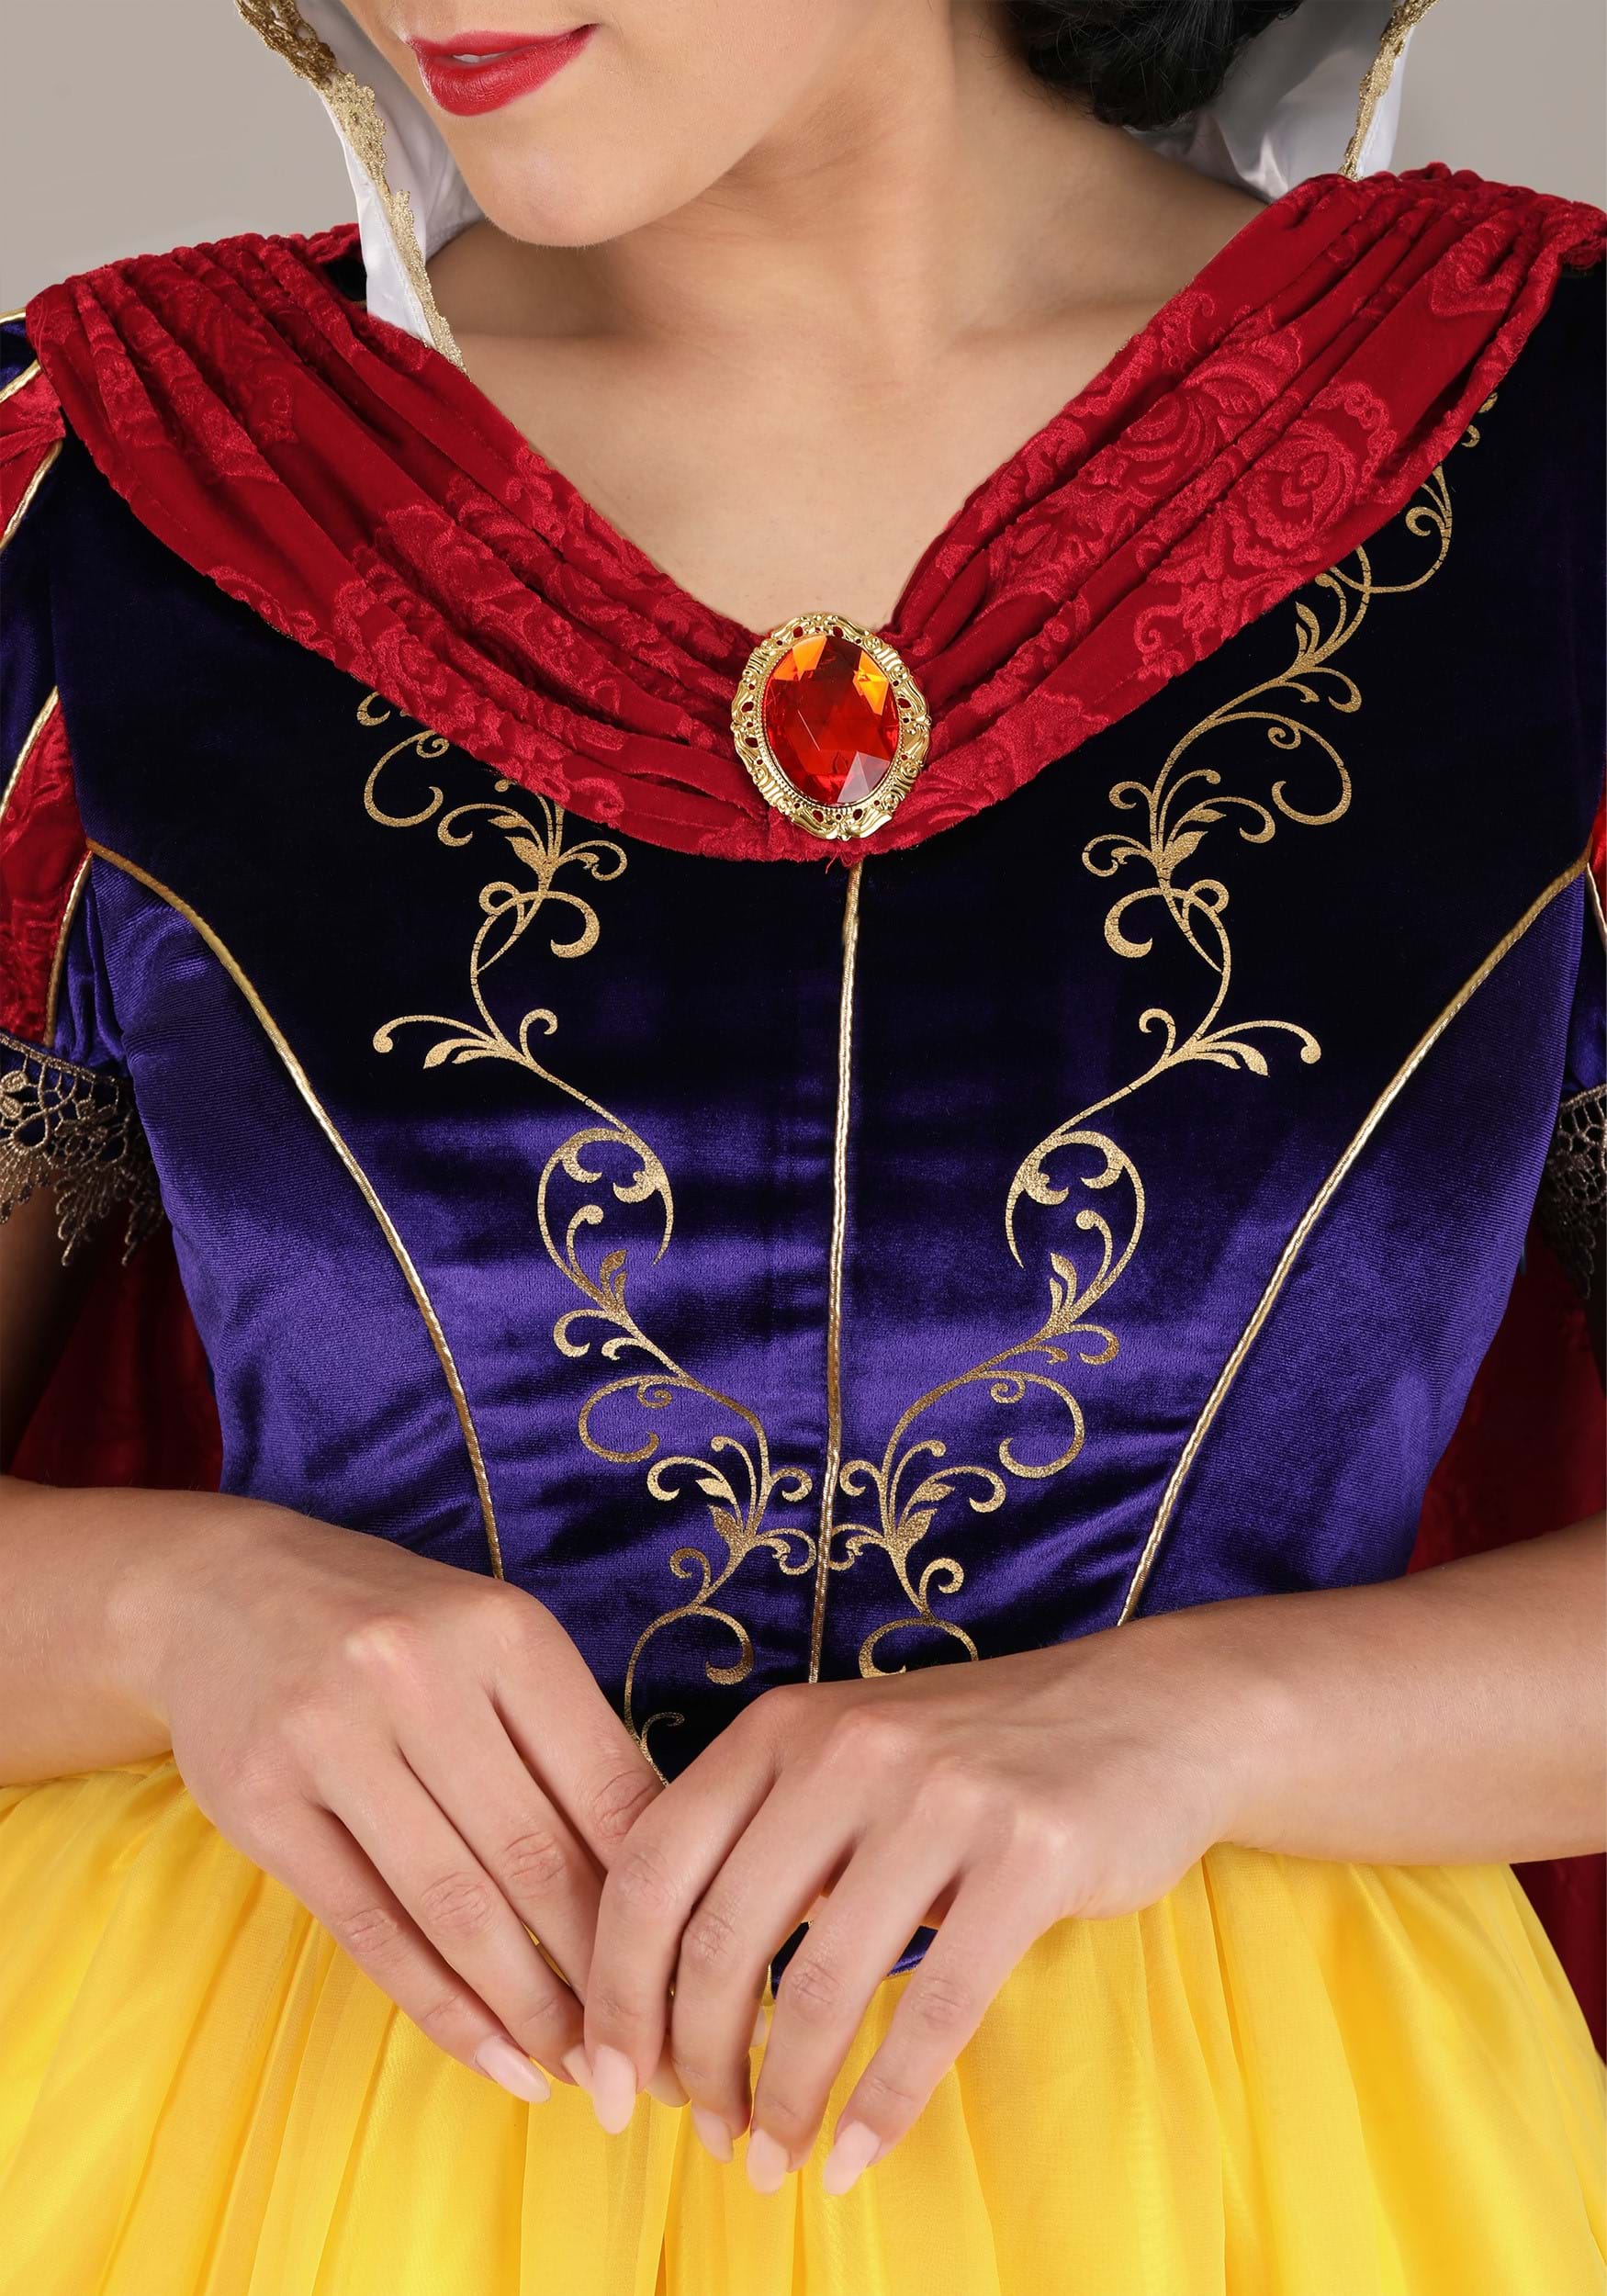 Adult Premium Snow White Costume